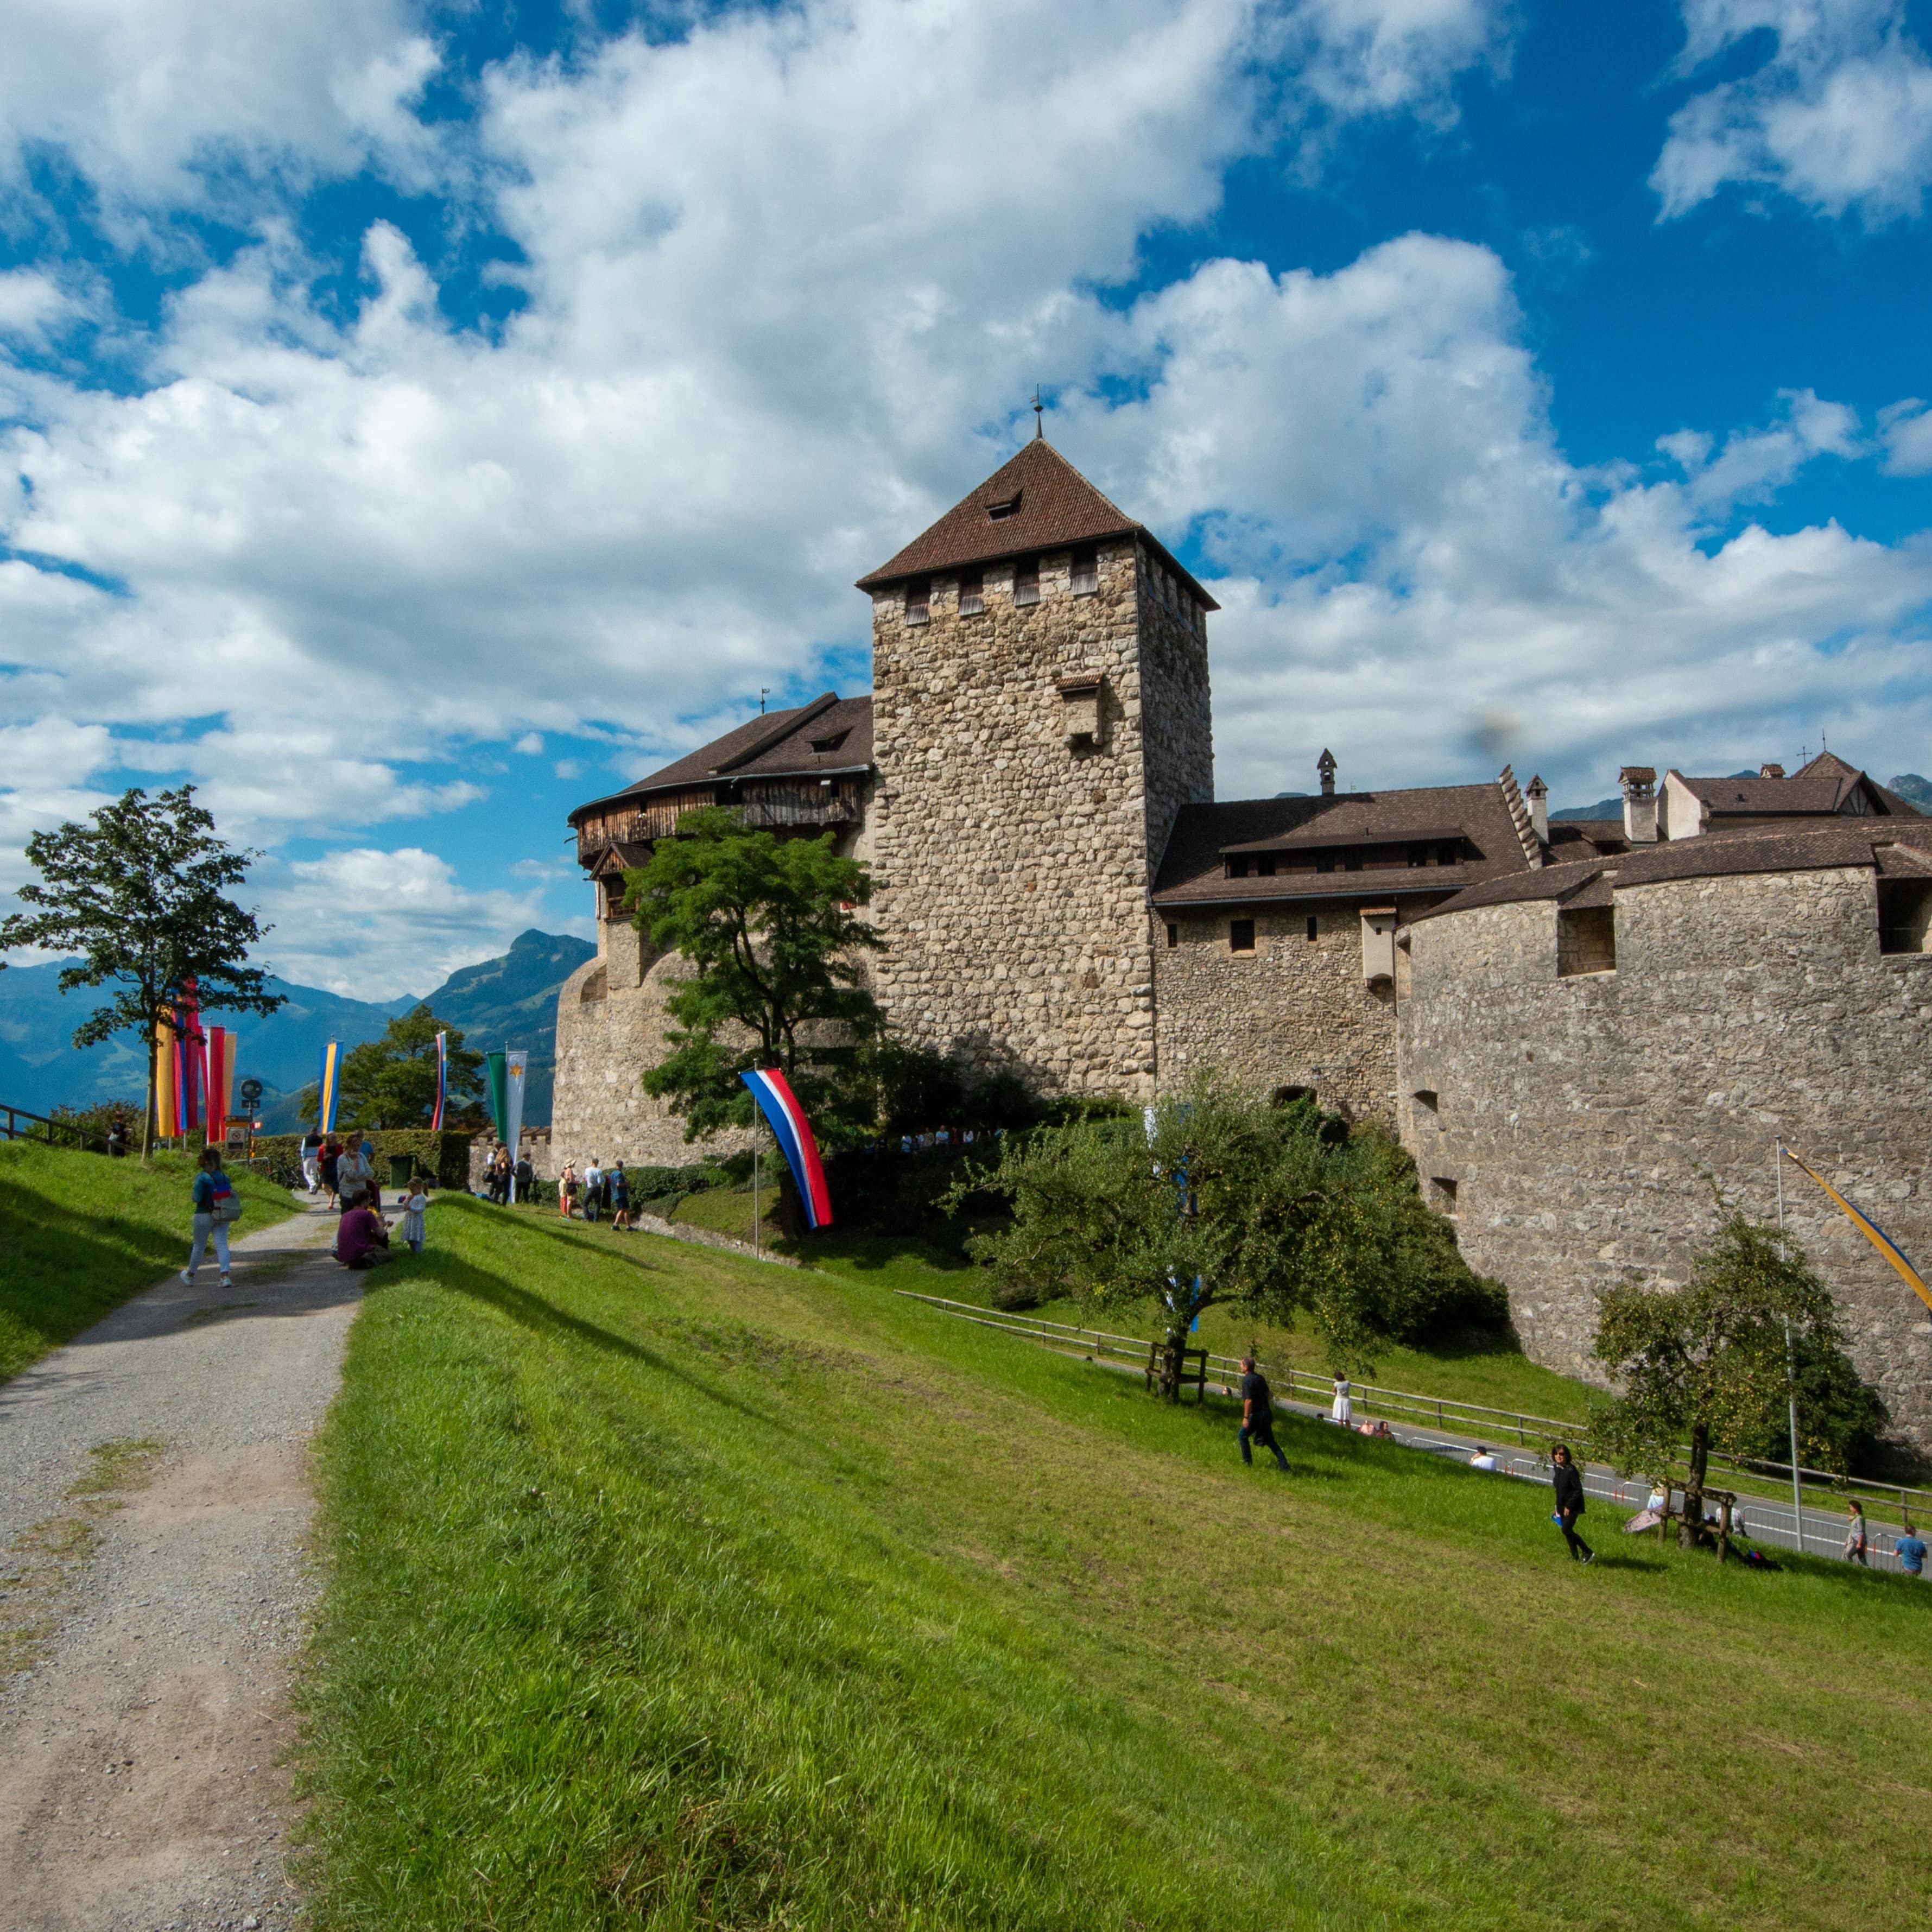 Ein Schotterweg mit Fahnen führt zu Schloss Vaduz, Personen laufen auf das Schloss zu.